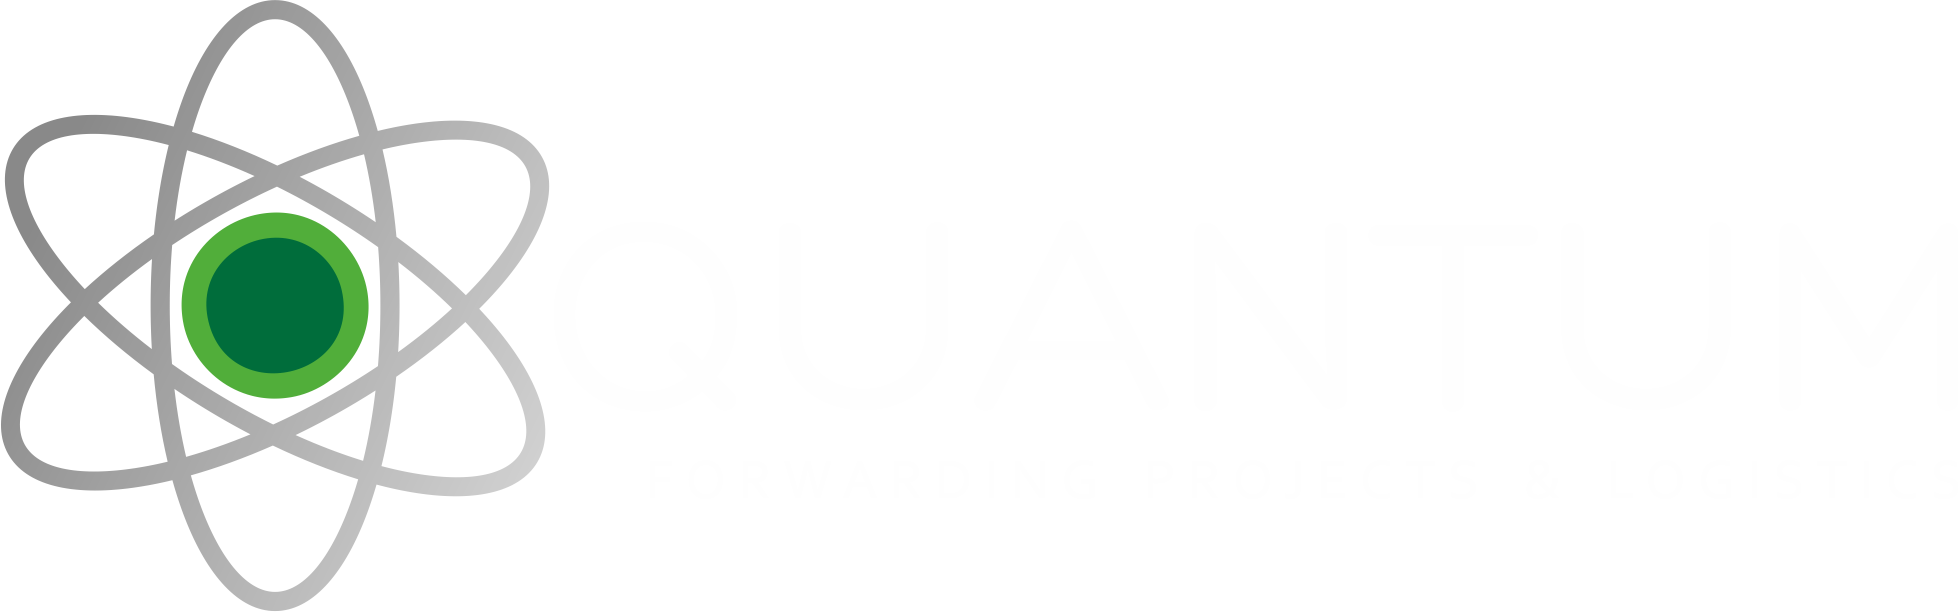 Quantum Forwarding